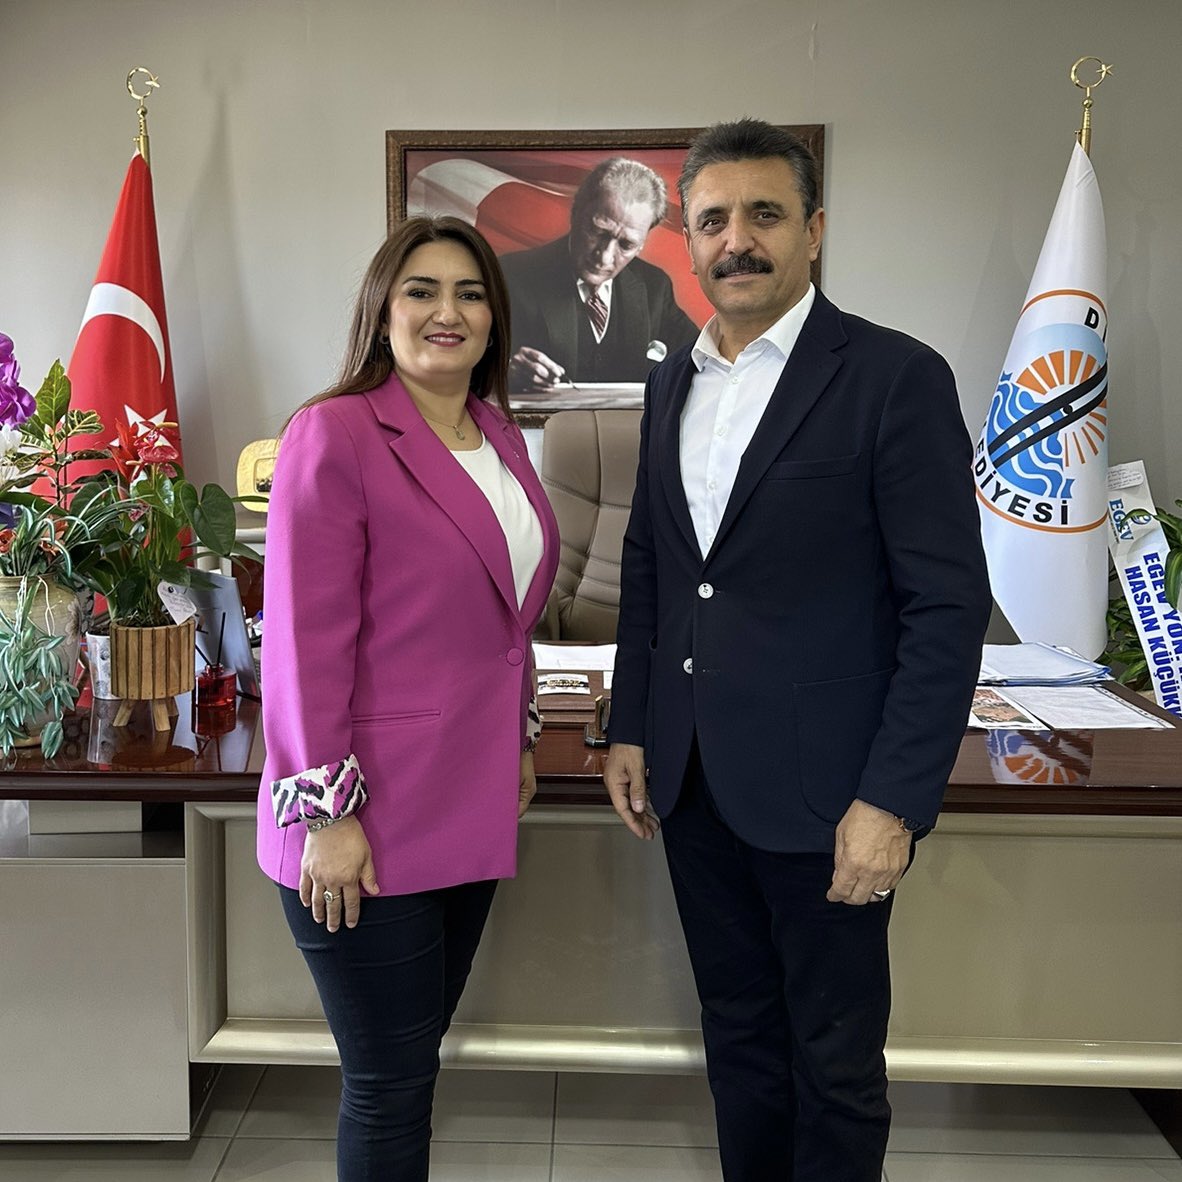 📍Dikili Dikilili hemşehrilerimizin teveccühüyle ikince kez seçilen Belediye Başkanımız Adil Kırgöz’ü ziyaret ettik. Dikili’de hizmetler kaldığı yerden devam edecek. Başkanımıza yeni döneminde başarılar dilerim. #İzmir #Dikili @adilkirgoz